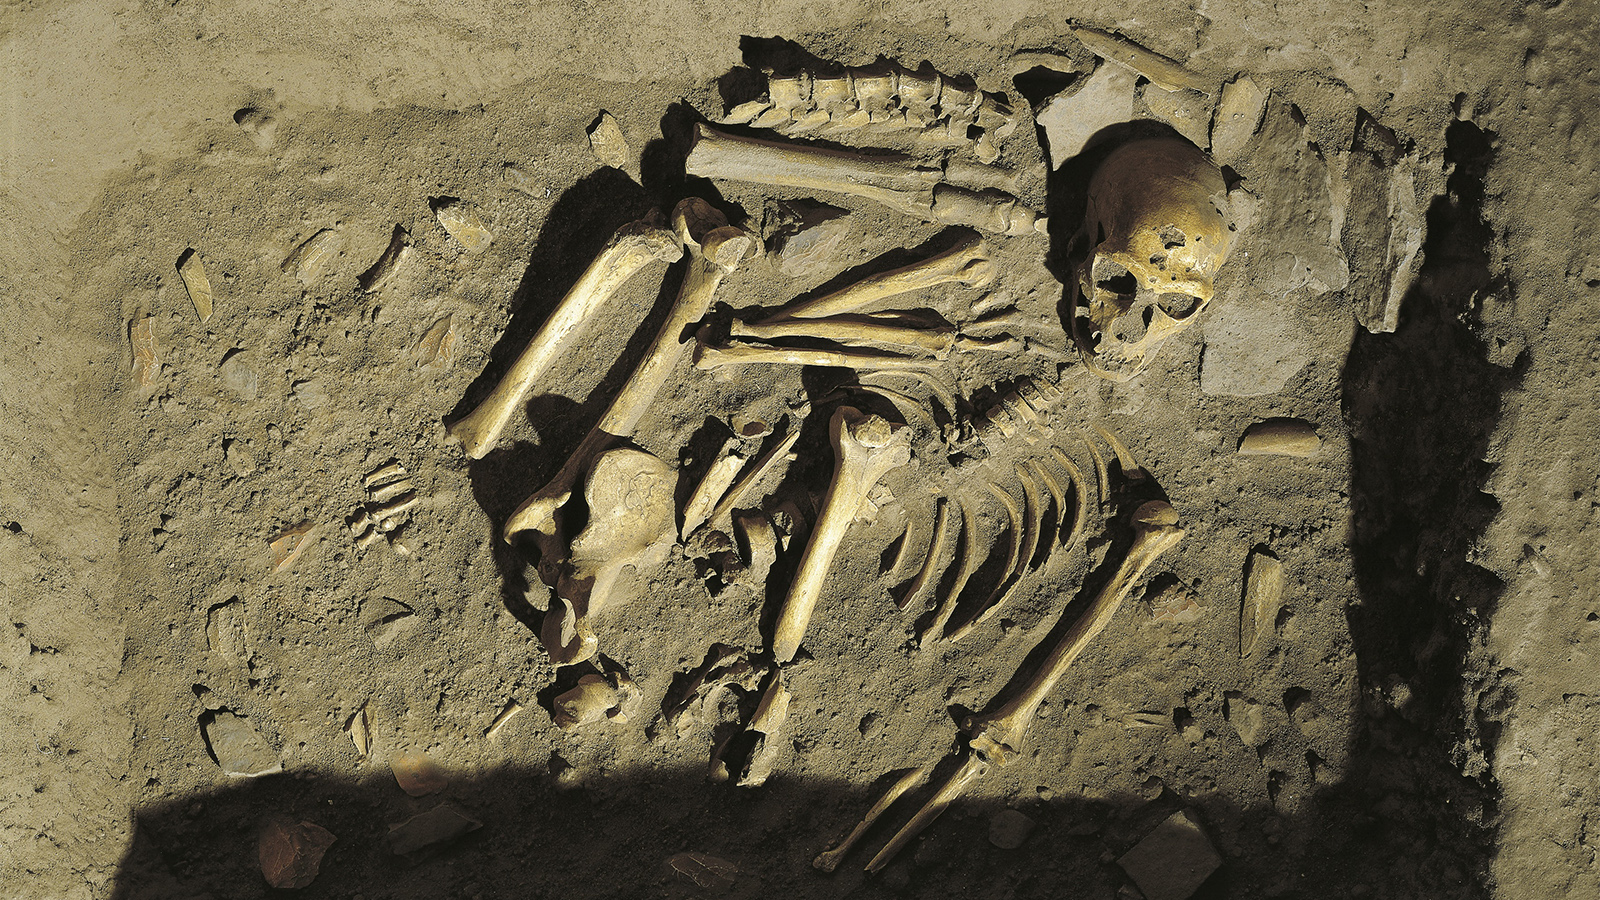 ДНК вымерших: как кости неандертальцев принесли биологу Нобелевскую премию  | Forbes.ru